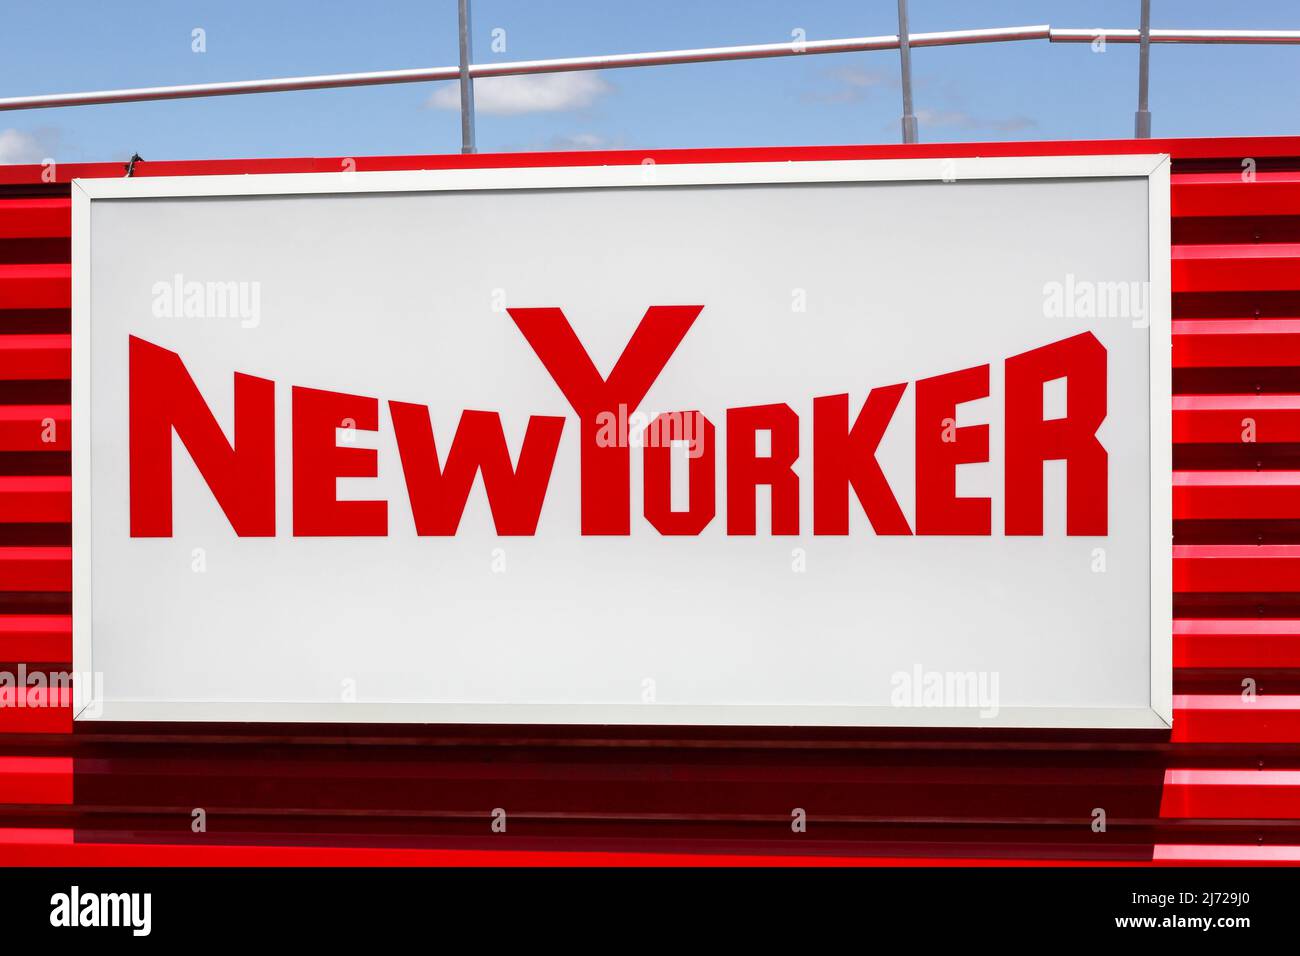 Saint Etienne, Francia - 21 giugno 2020: Logo NewYorker su un muro. NewYorker è un rivenditore di abbigliamento tedesco con sede a Braunschweig Foto Stock